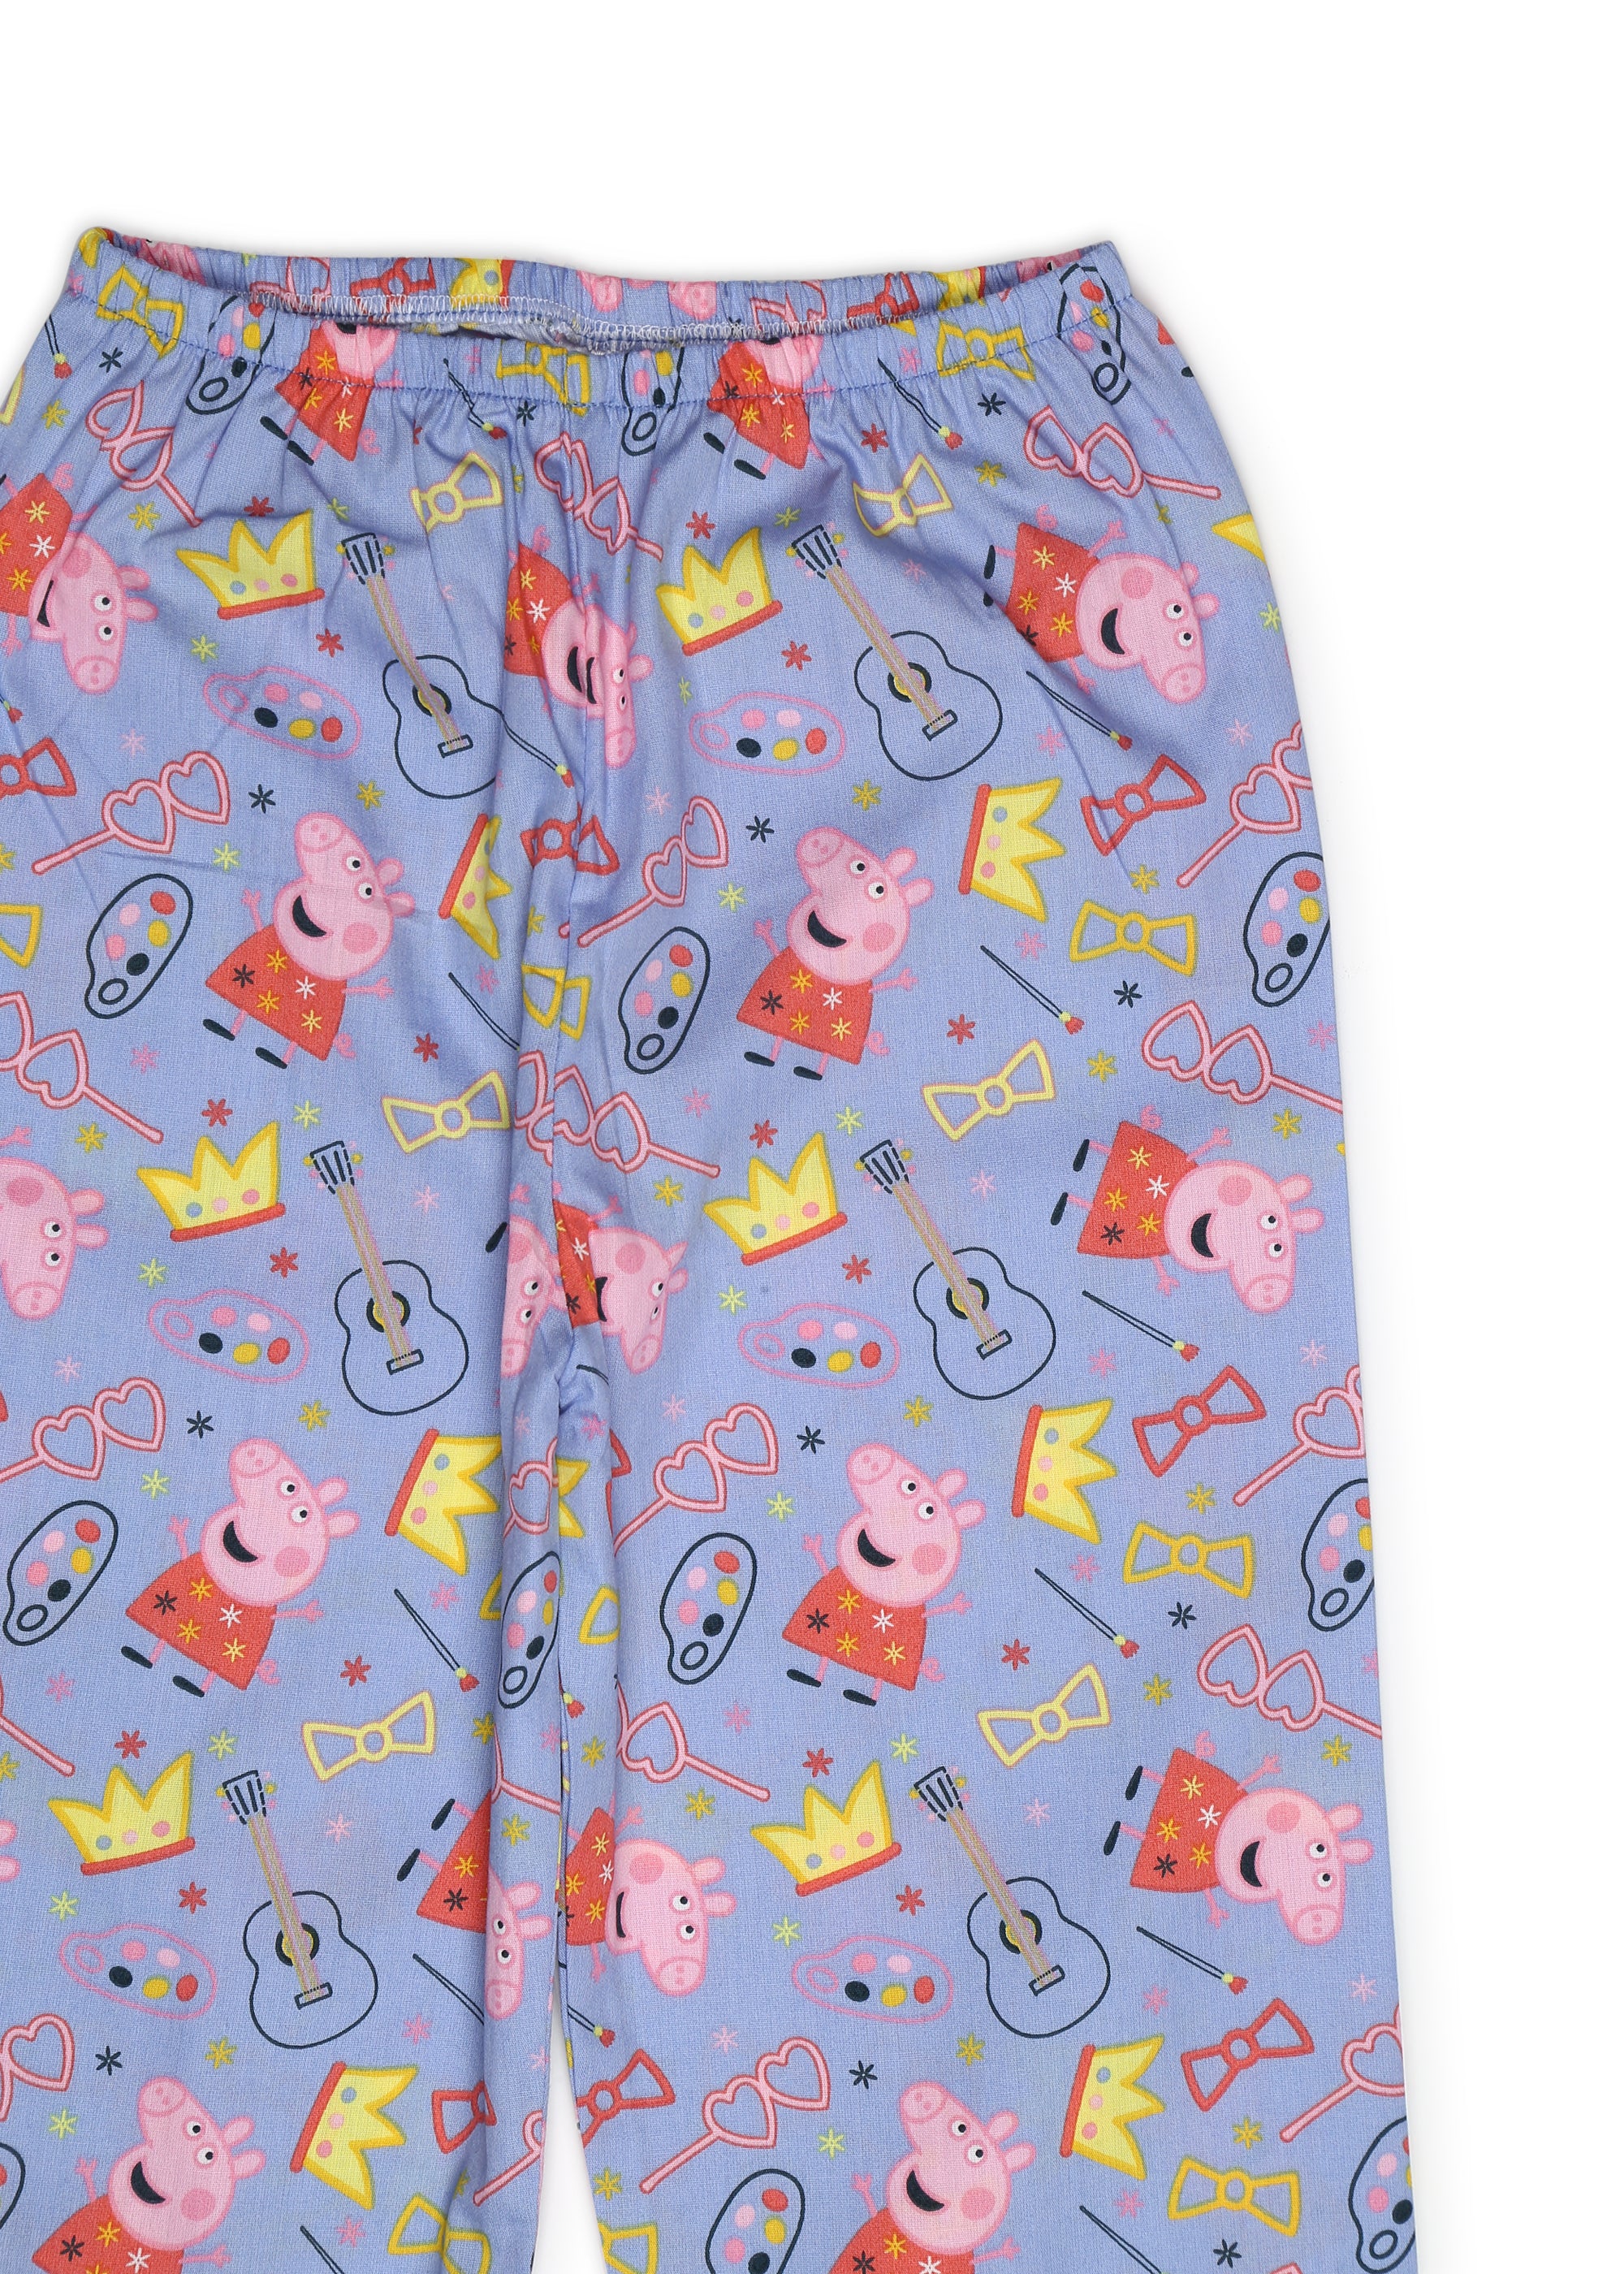 Peppa Crown Print Long Sleeve Kids Night Suit - Shopbloom